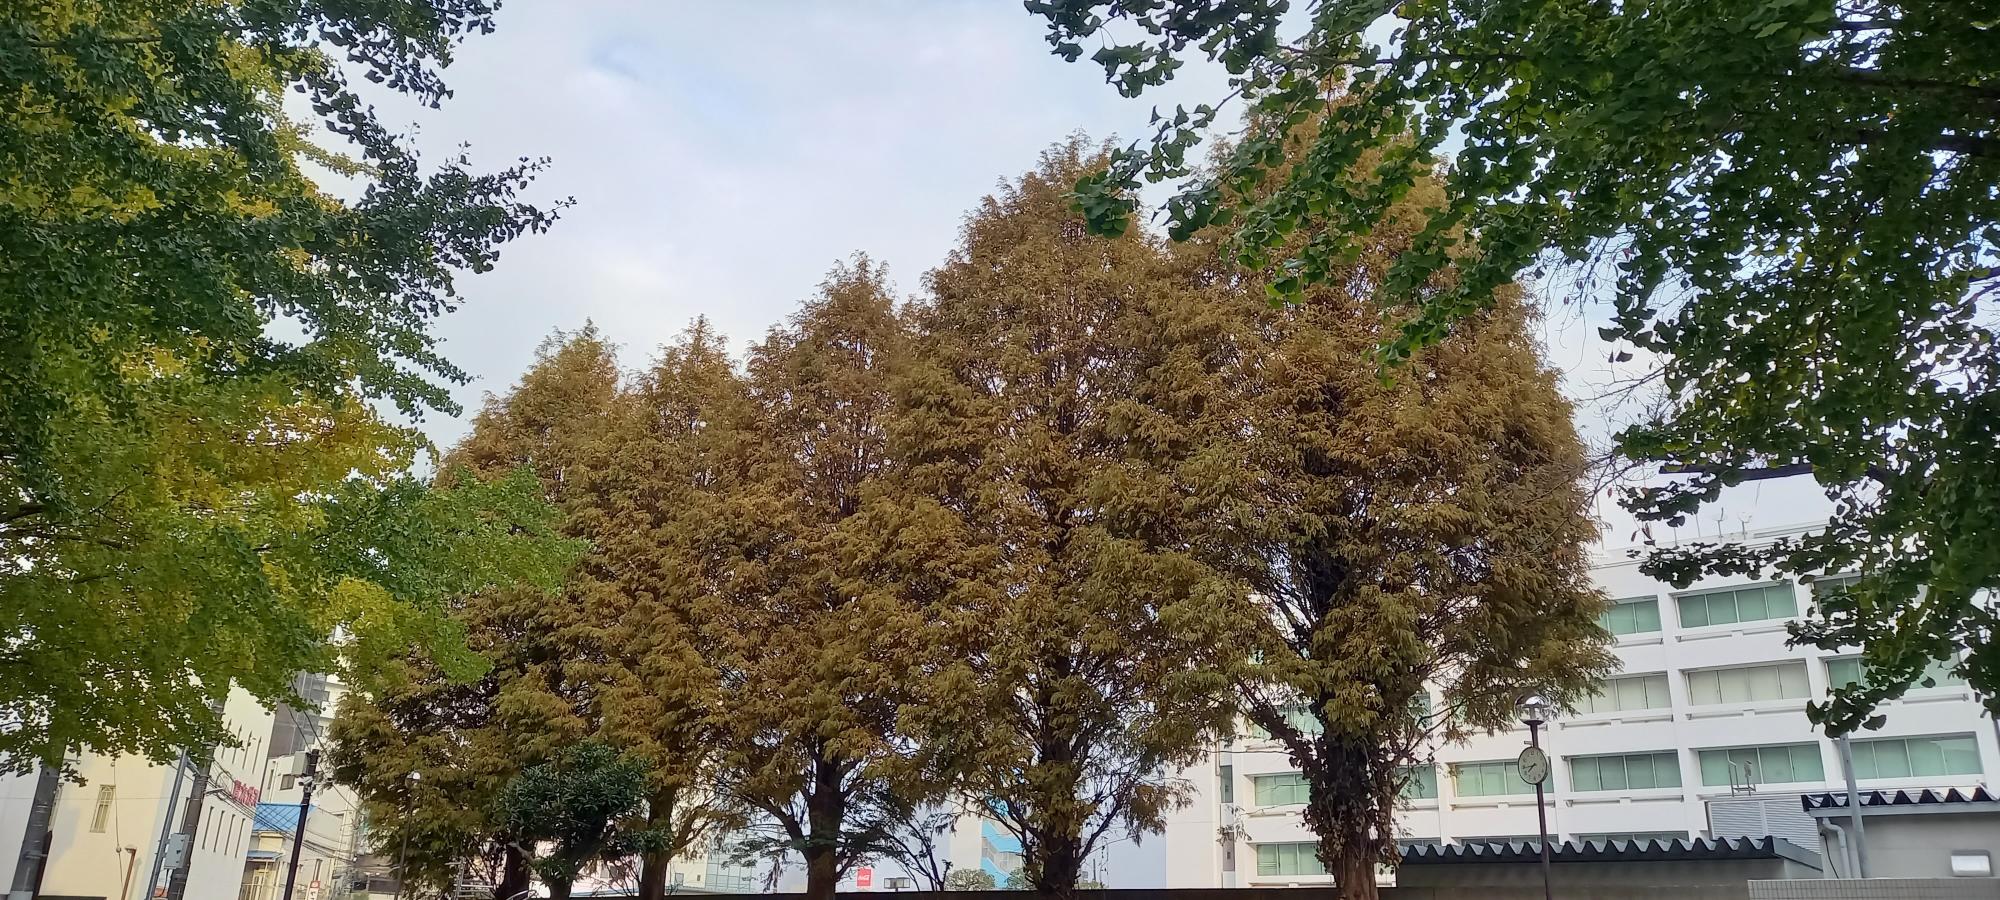 大手公園にそびえたつ茶褐色の巨大樹木5本